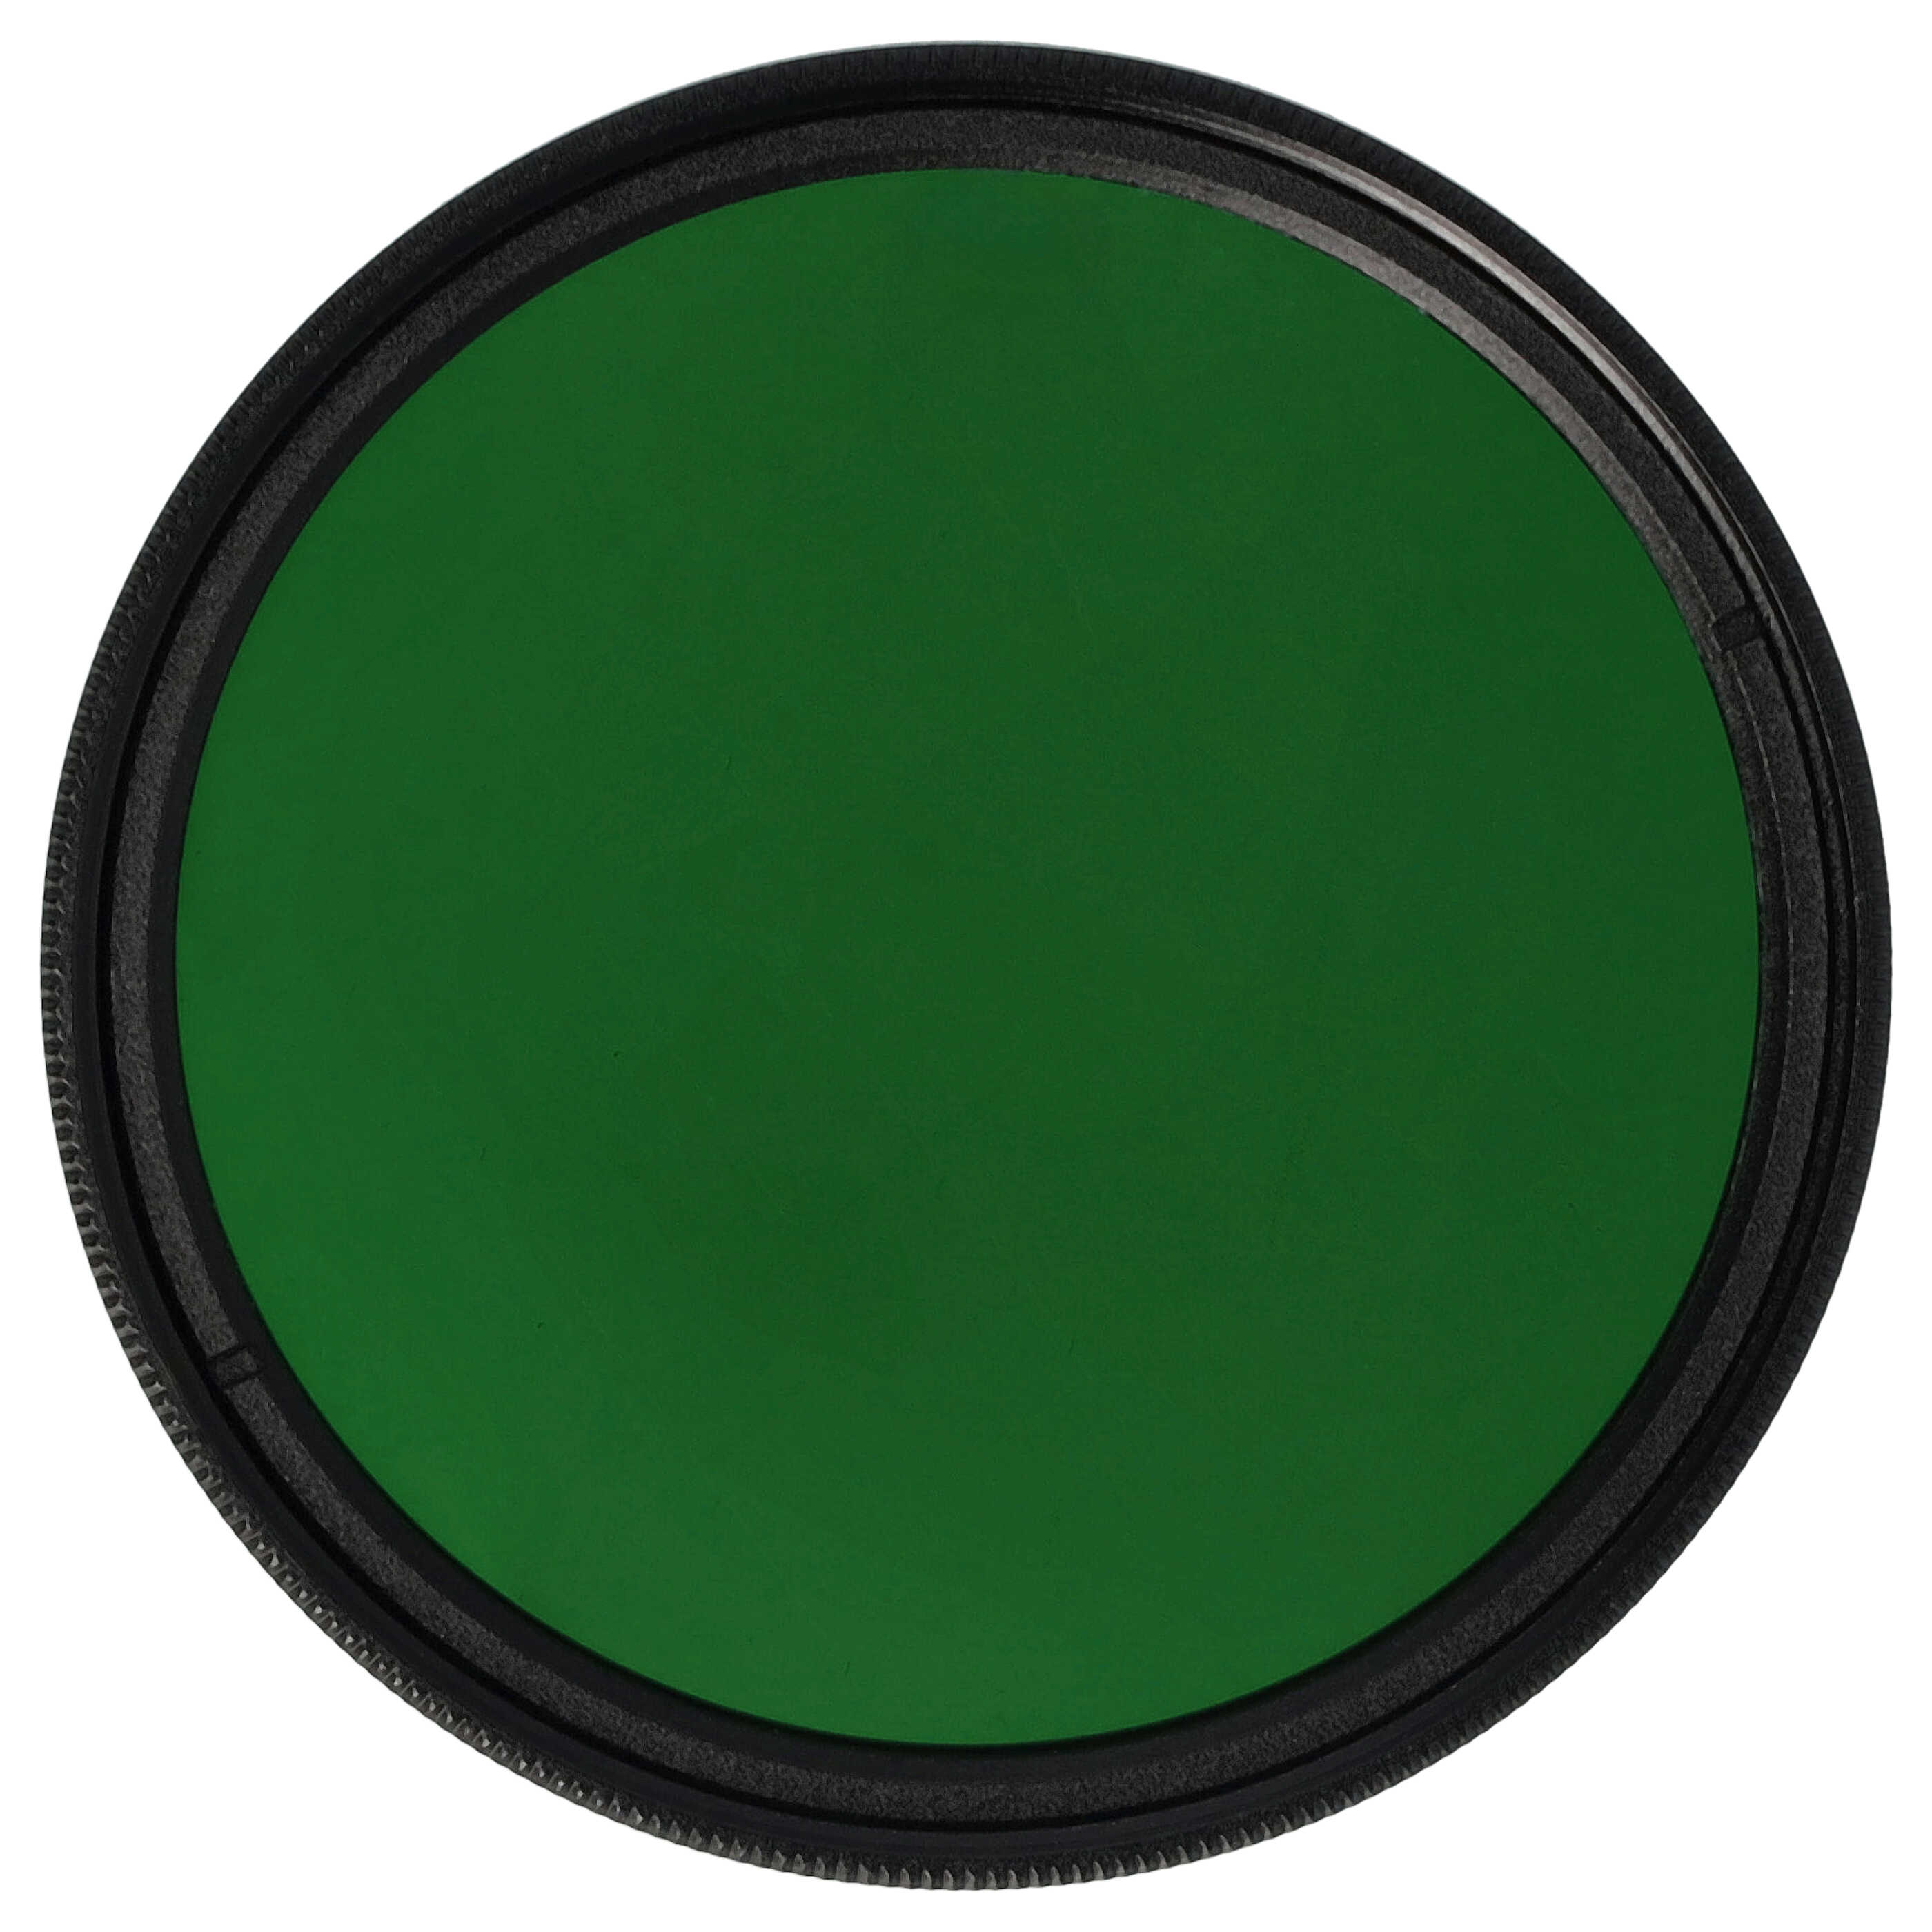 Farbfilter grün passend für Kamera Objektive mit 49 mm Filtergewinde - Grünfilter